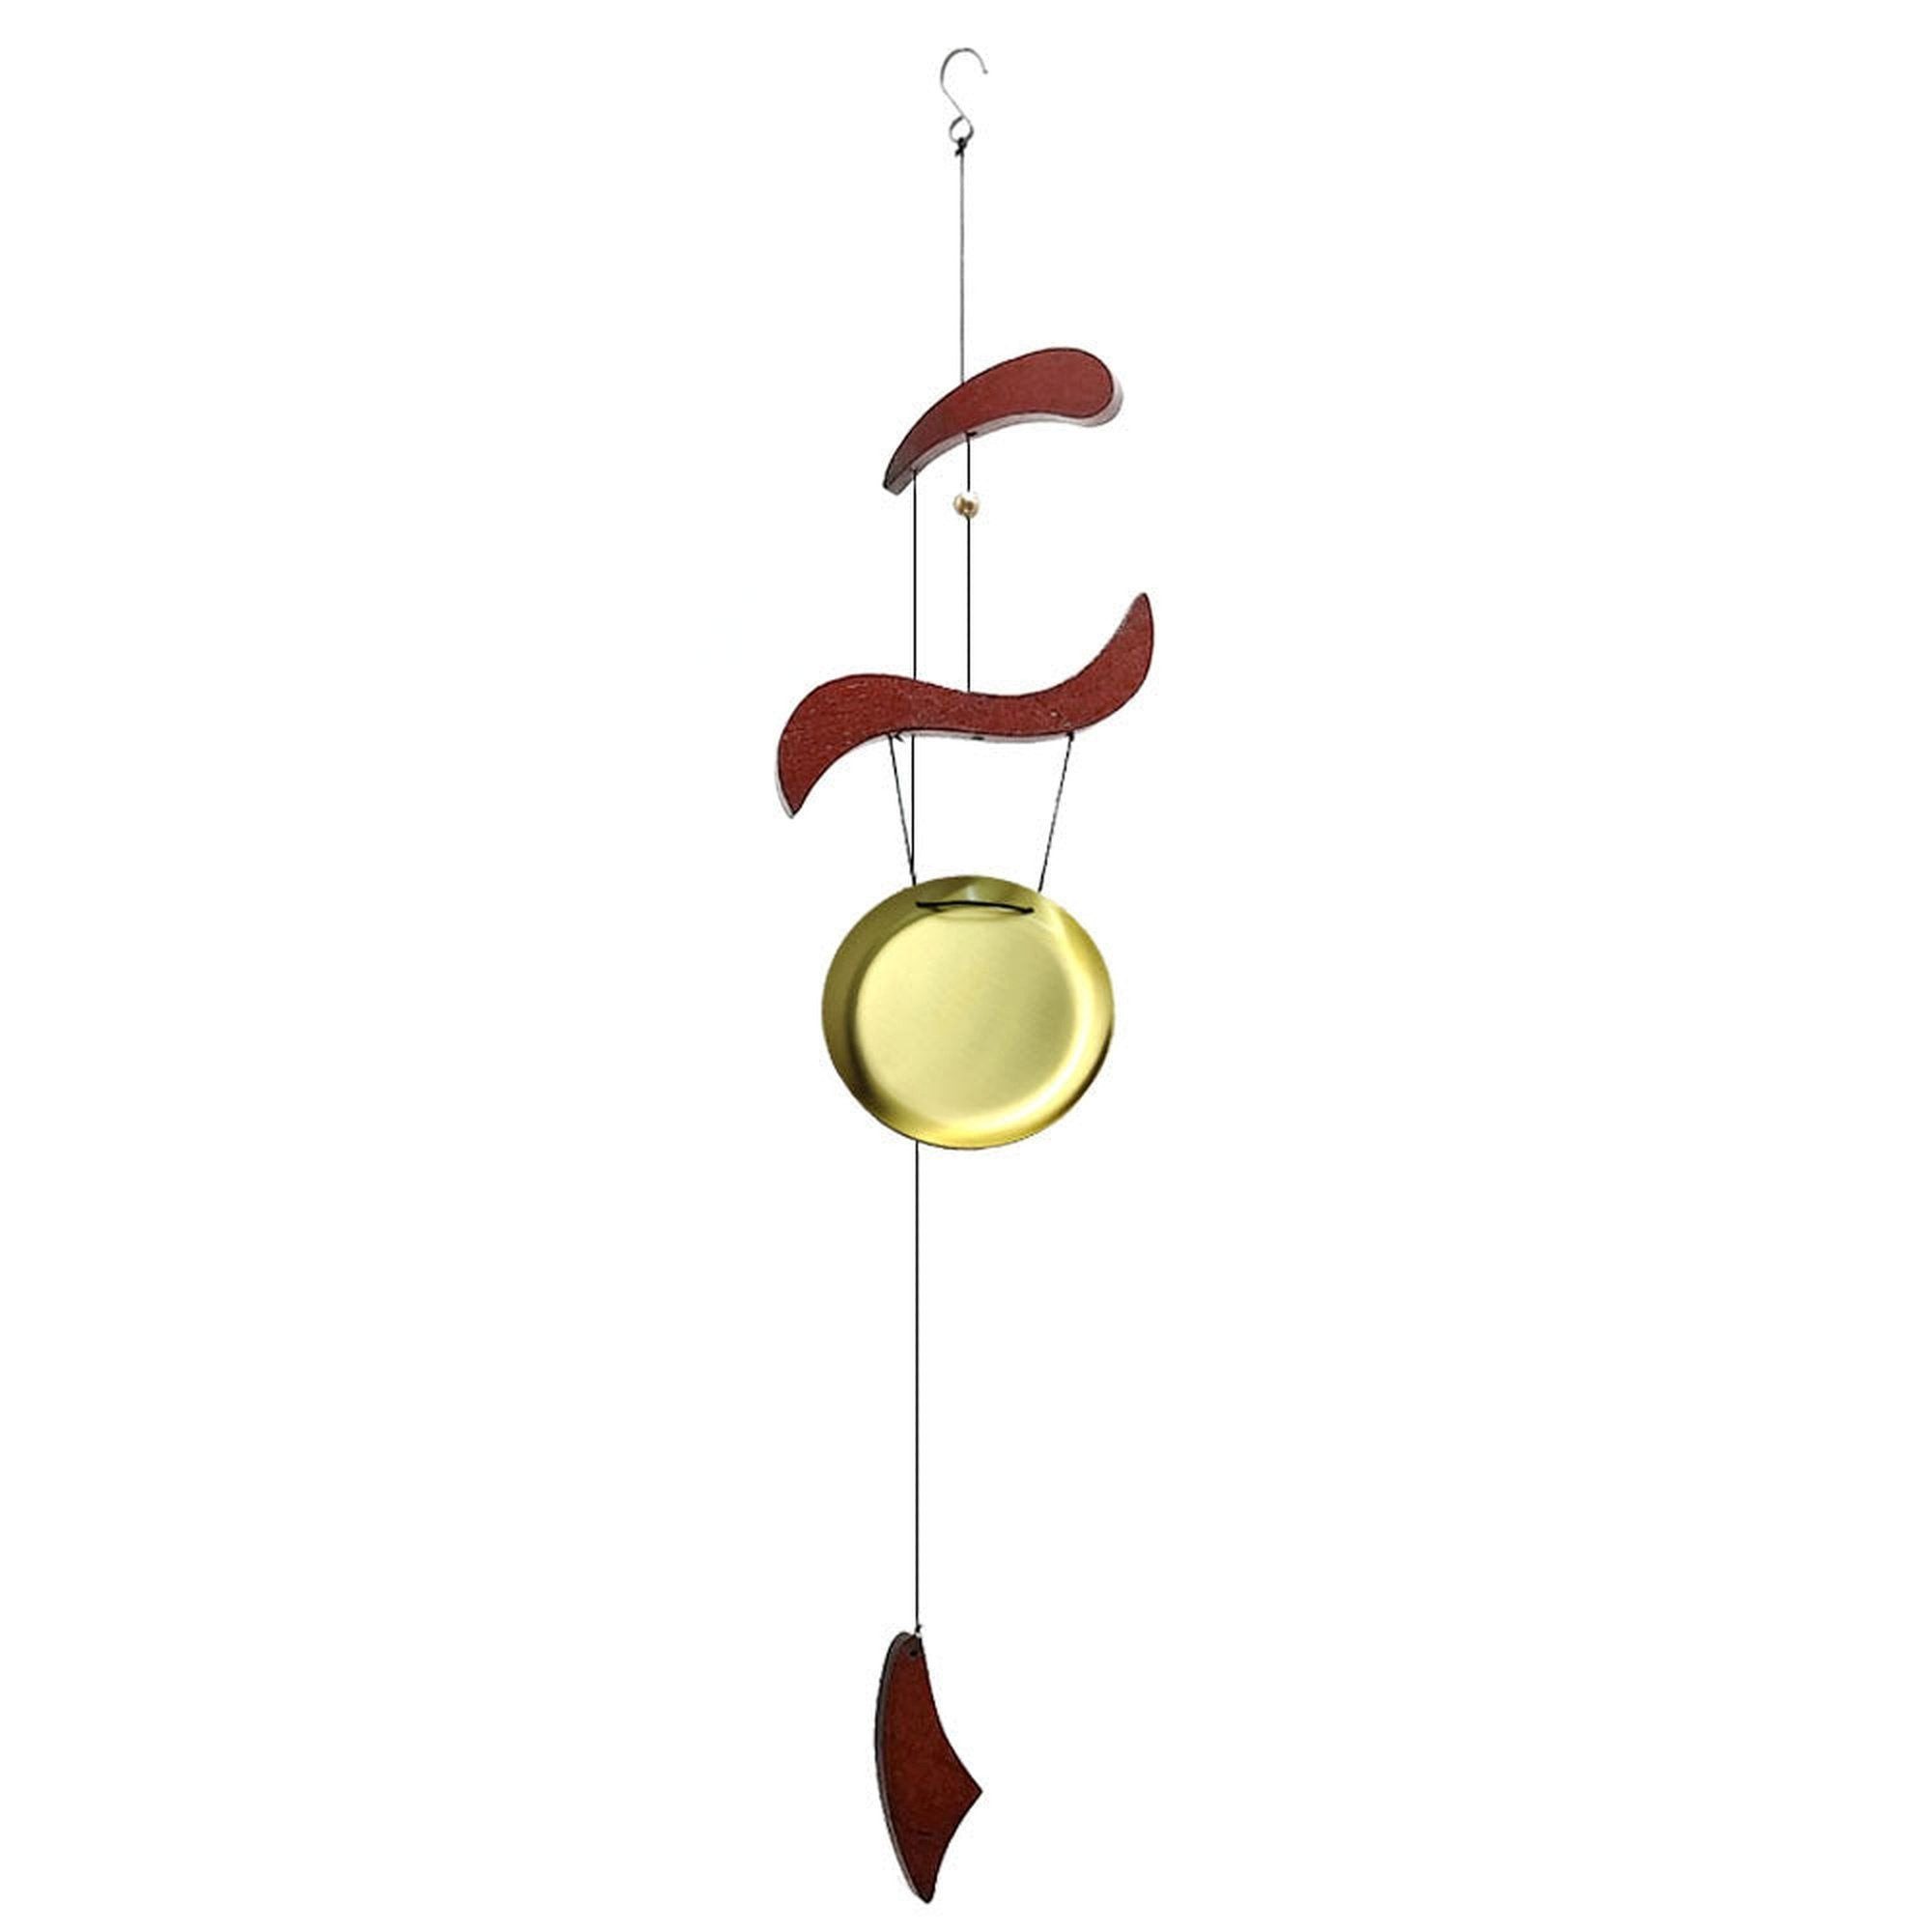 AUKUU Windspiel Windspiel Windspiel aus Kupfer zum Aufhängen Ornamente für, den Außenbereich Garten Heimdekoration Geschenk große Glocke